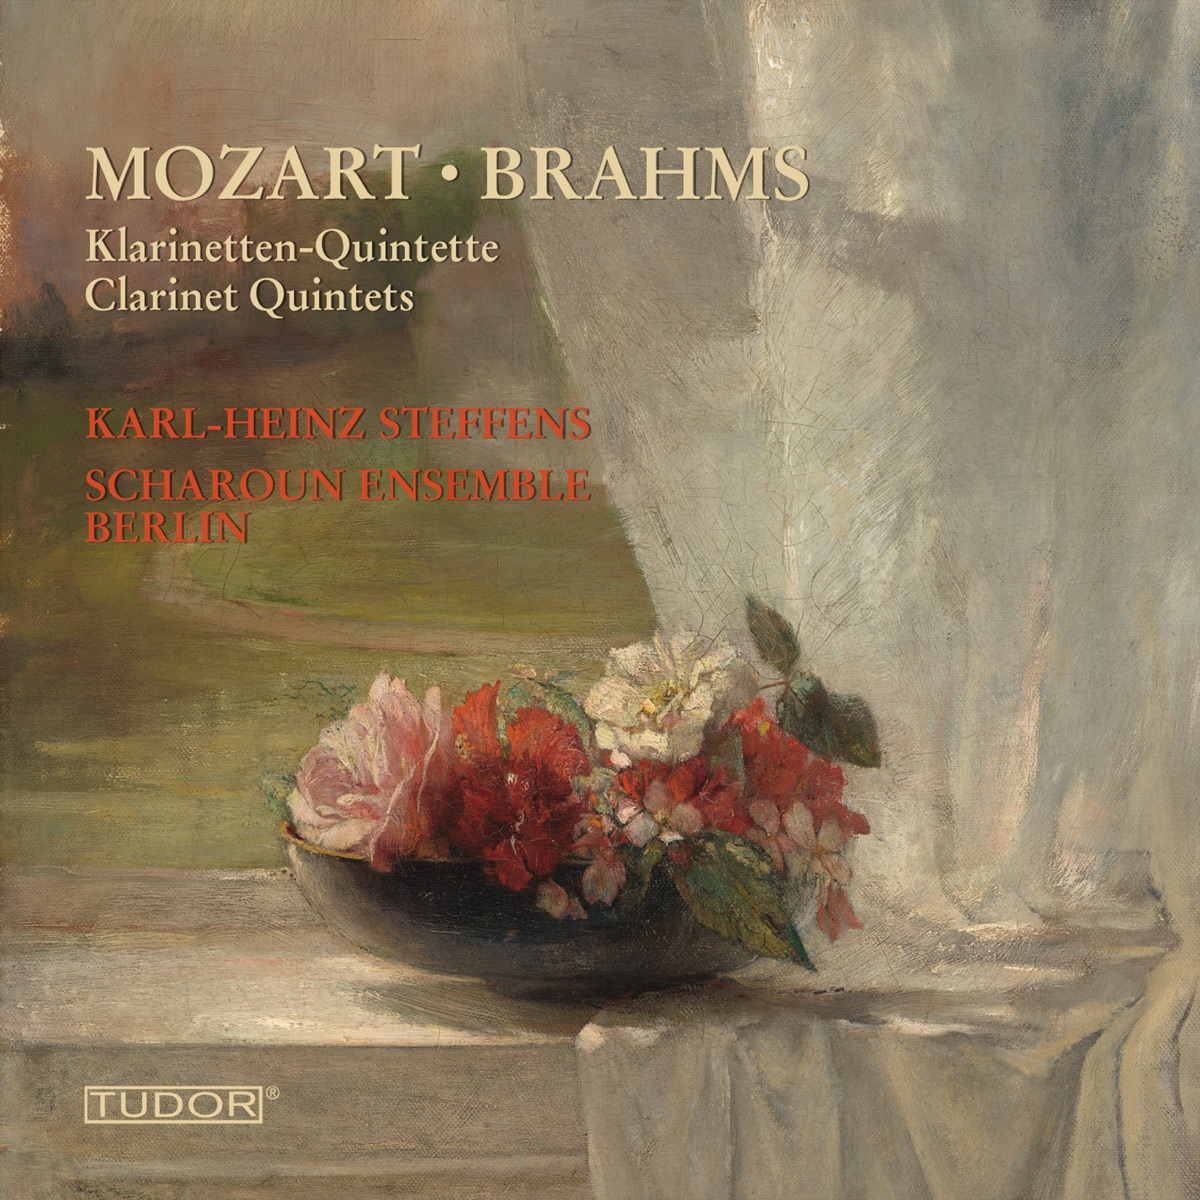 Mozart, W.A.:Clarinet Quintet, K. 581 - Brahms, J.: Clarinet